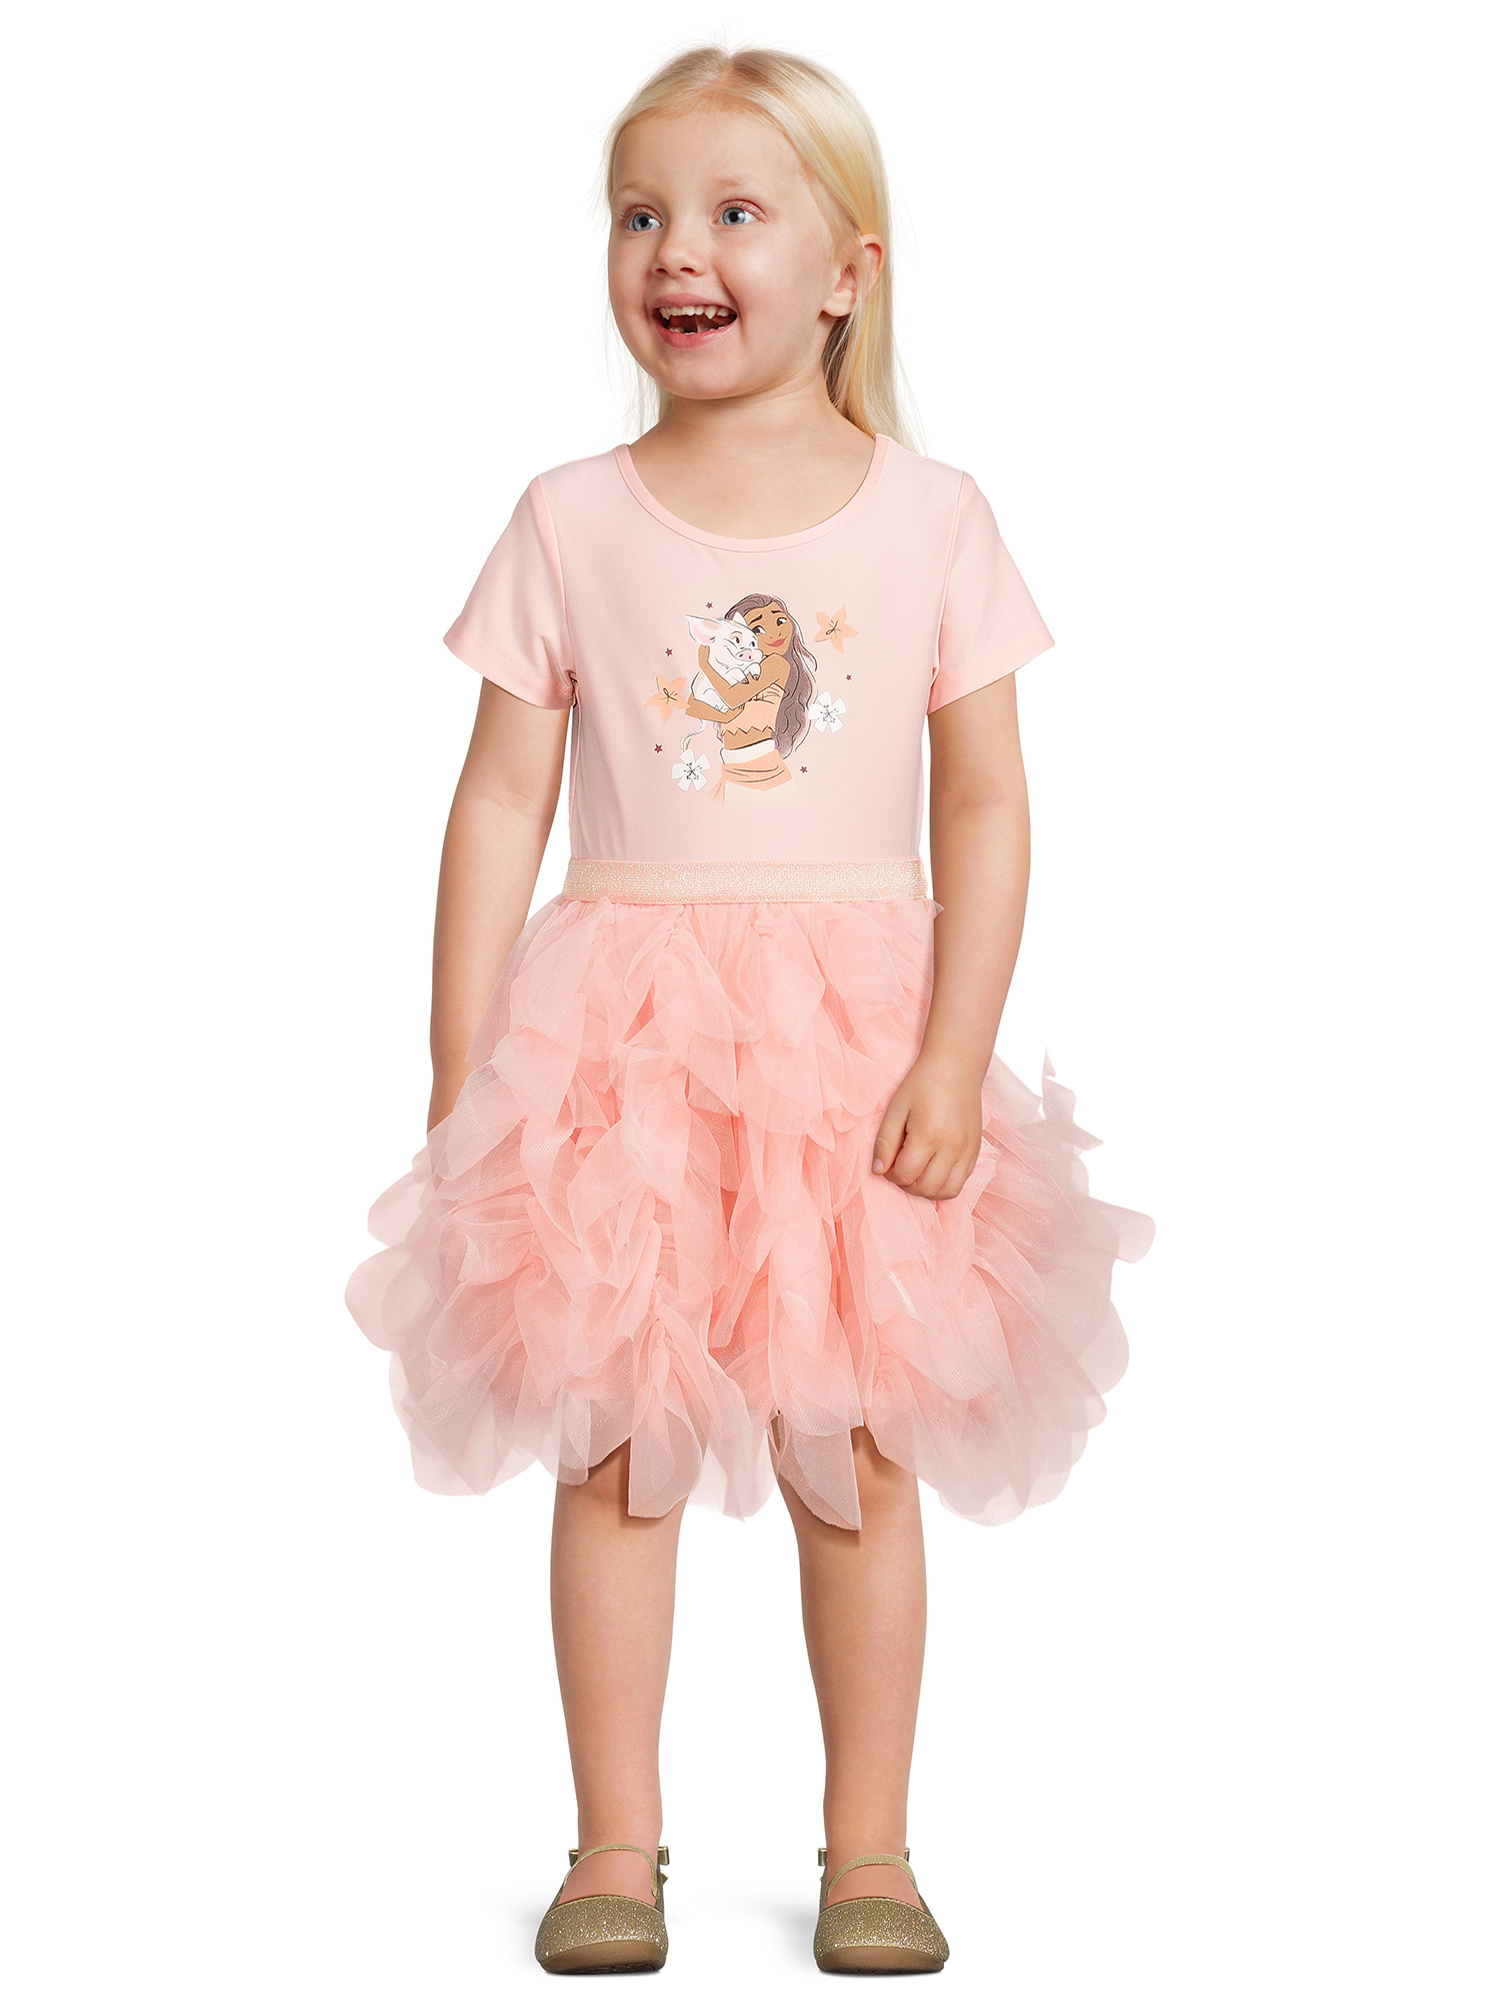 Disney Moana Toddler Girl Short Sleeve Tutu Dress, Sizes 12M-5T - image 2 of 6